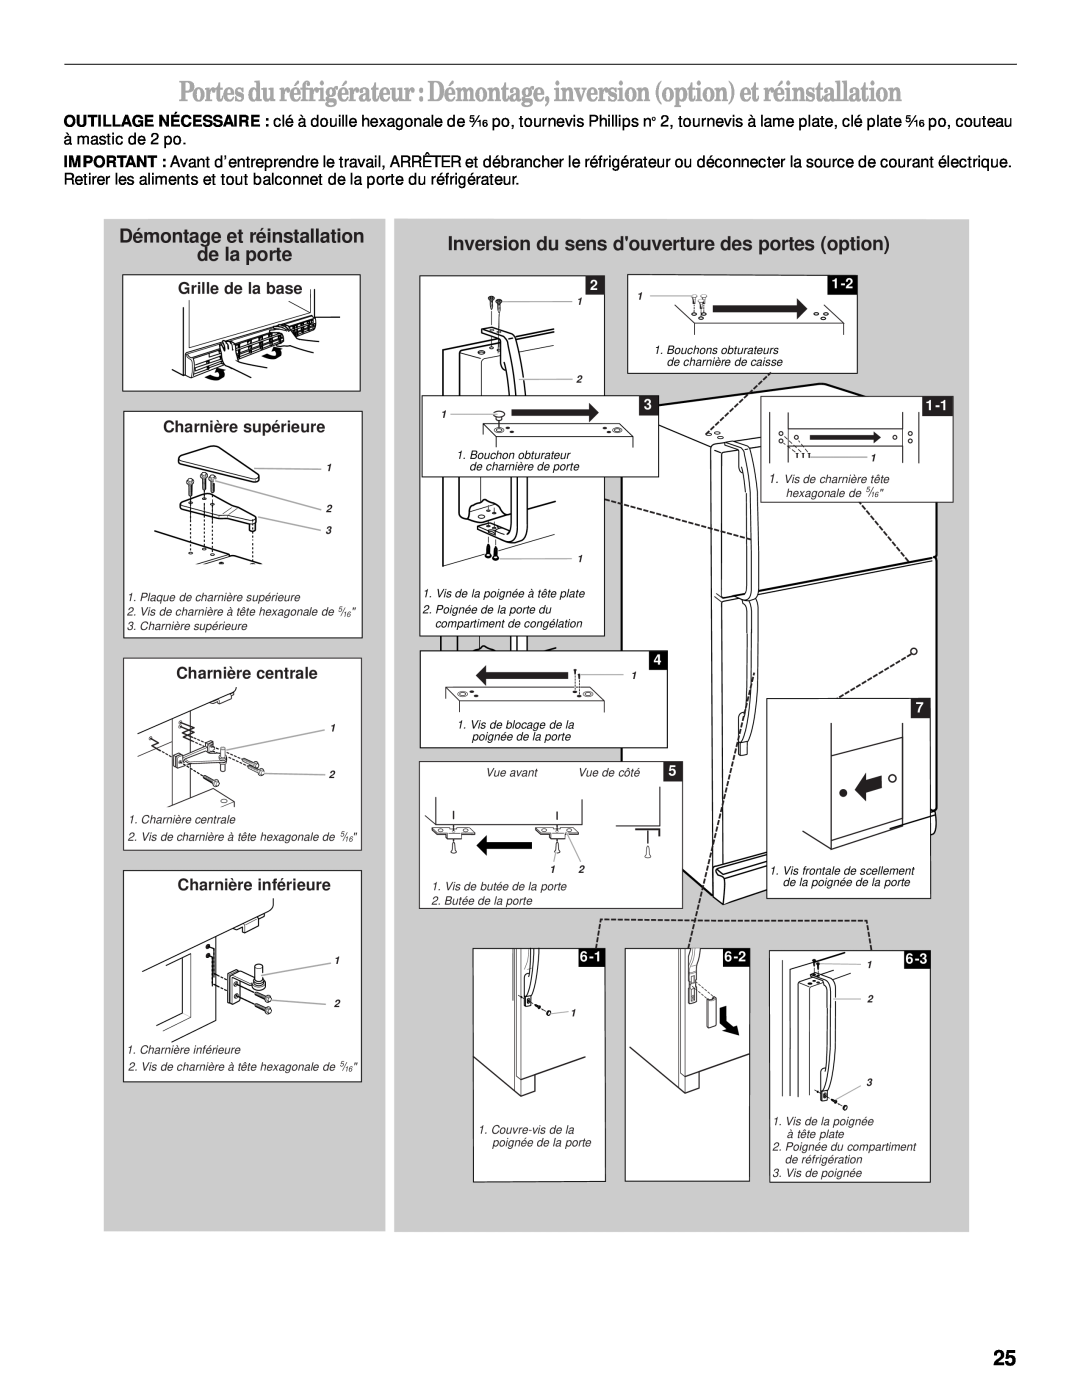 Whirlpool 2205266 manual Démontage et réinstallation de la porte, Inversion du sens douverture des portes option 